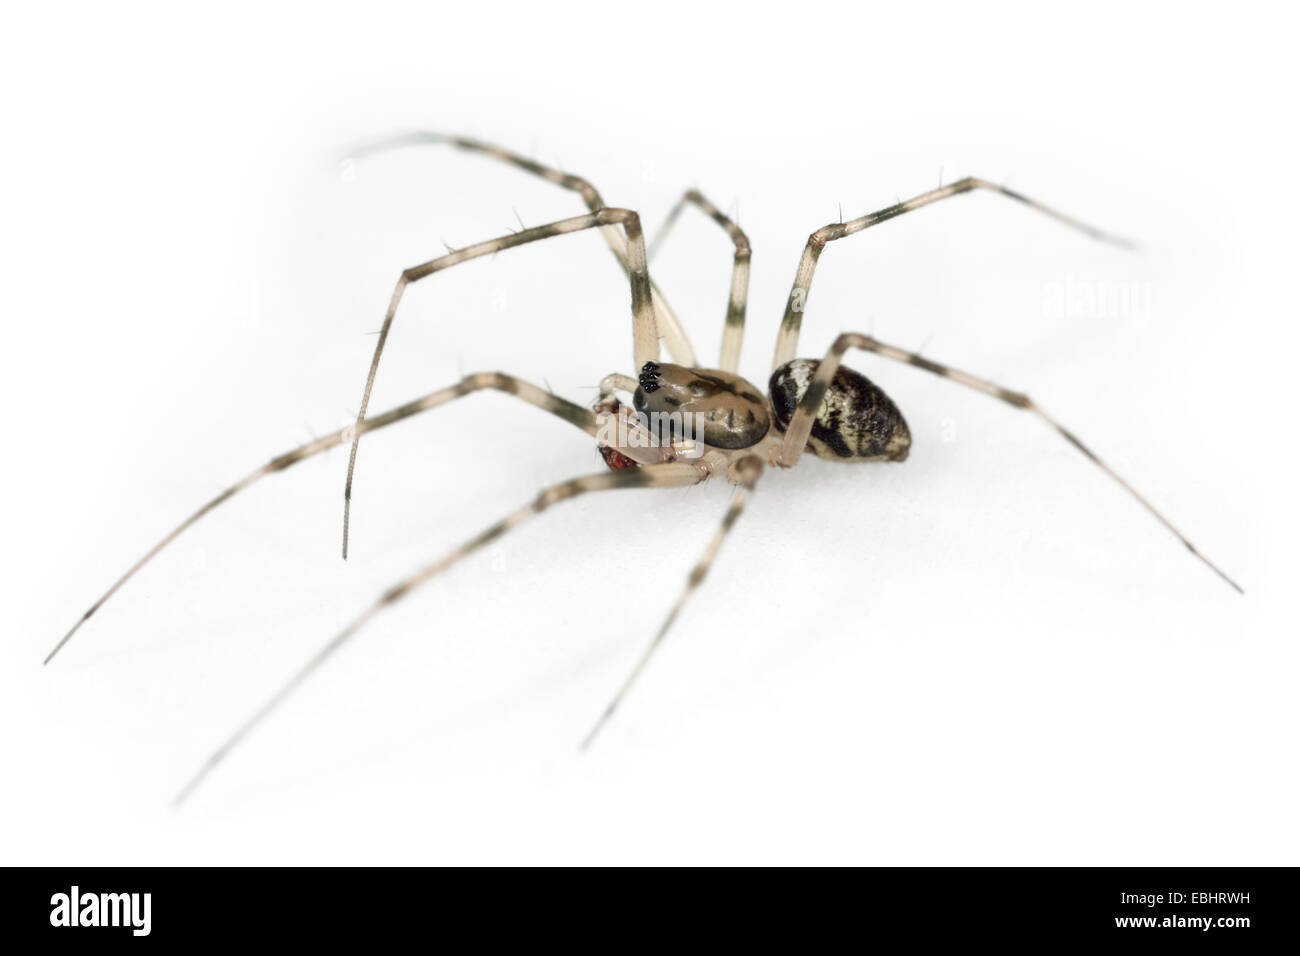 Ein männlicher Unsichtbaren Spinne (Drapetisca socialis) auf einem weißen Hintergrund. Ein Teil der Familie - Linyphiidae Sheetweb Weber. Stockfoto